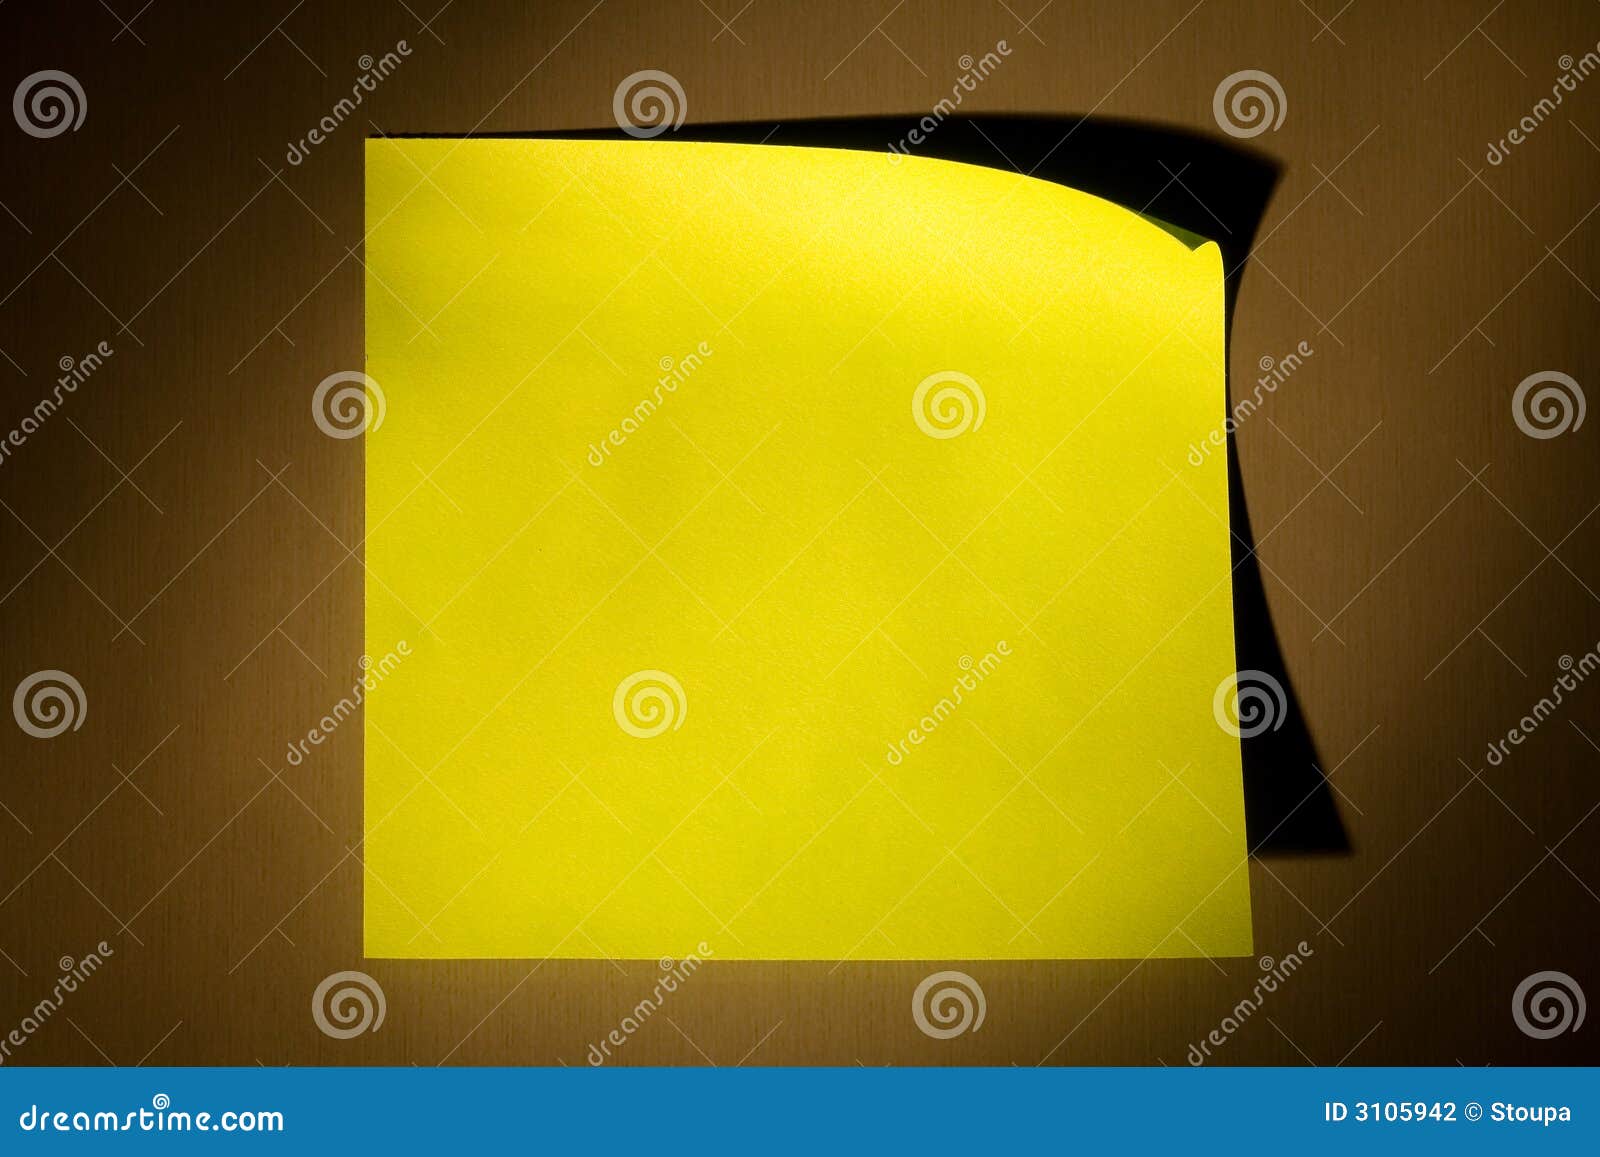 θέση σημειώσεων. συγκολλητικός κενός κώνος που φωτίζει σημειώσεων μετα θερμό κίτρινο επιφάνειας ψυγείων κολλημένο ανοξείδωτο